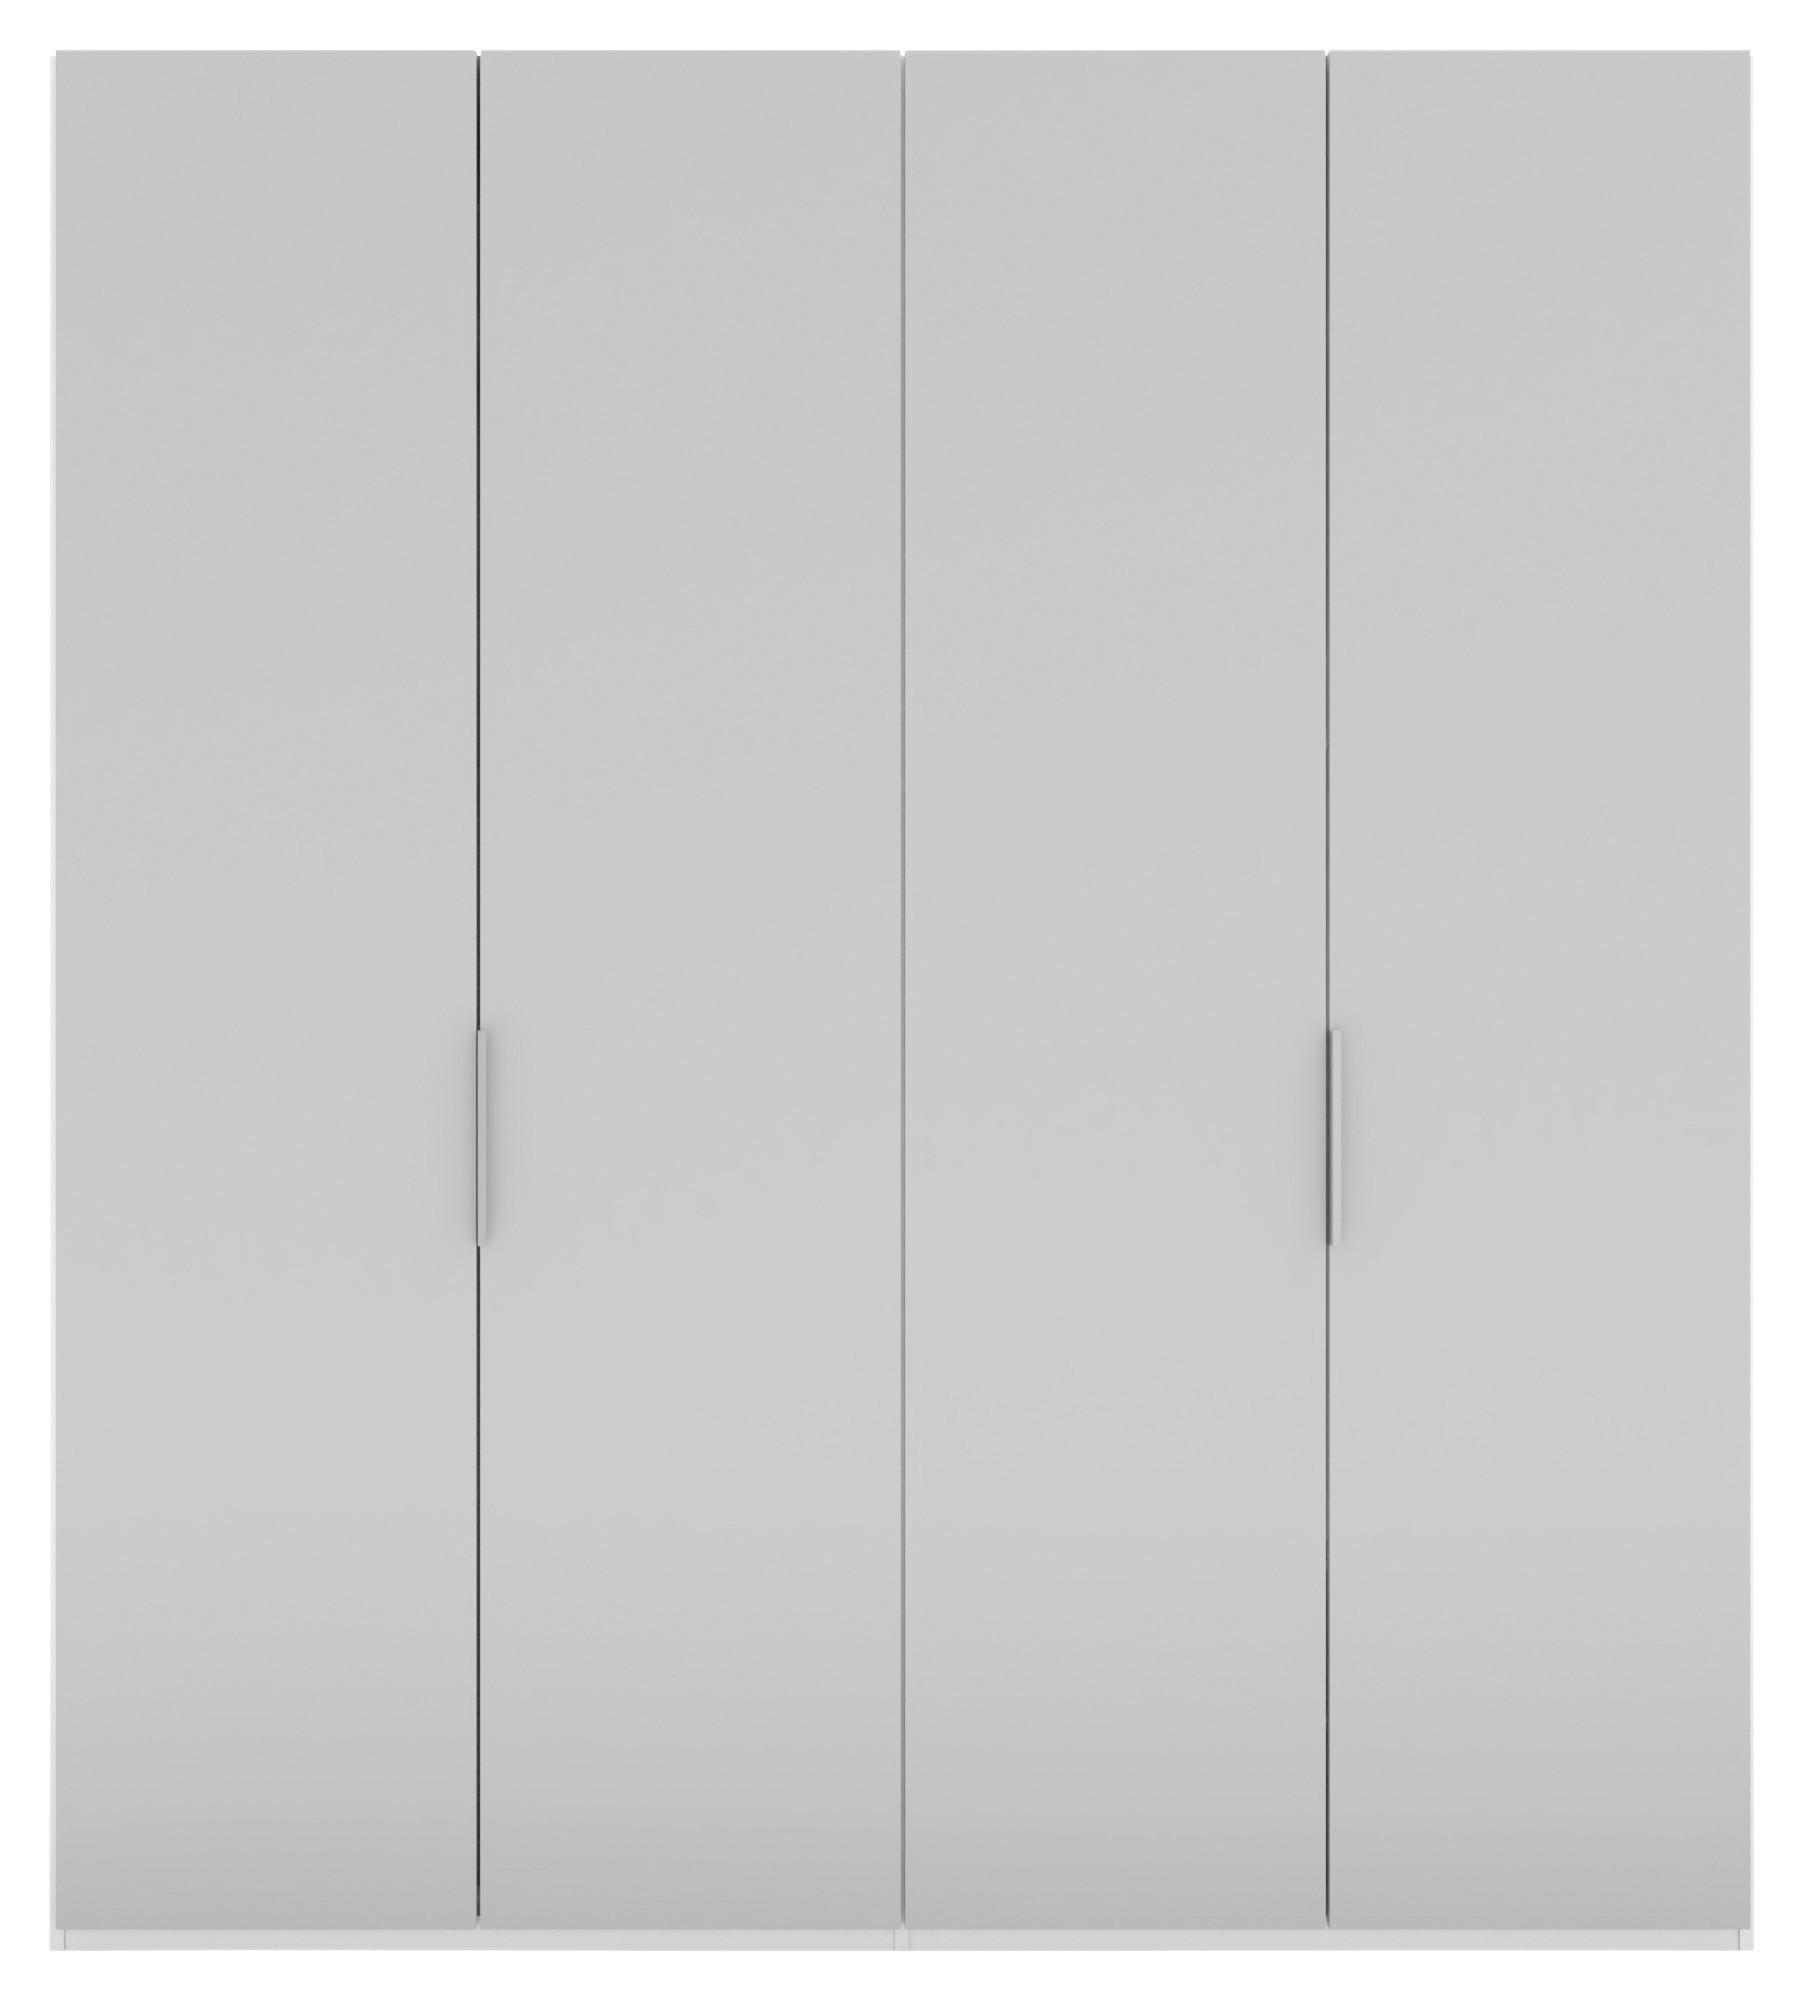 DREHTÜRENSCHRANK  in Grau, Weiß  - Alufarben/Weiß, KONVENTIONELL, Holzwerkstoff/Metall (200/223/62cm) - Visionight